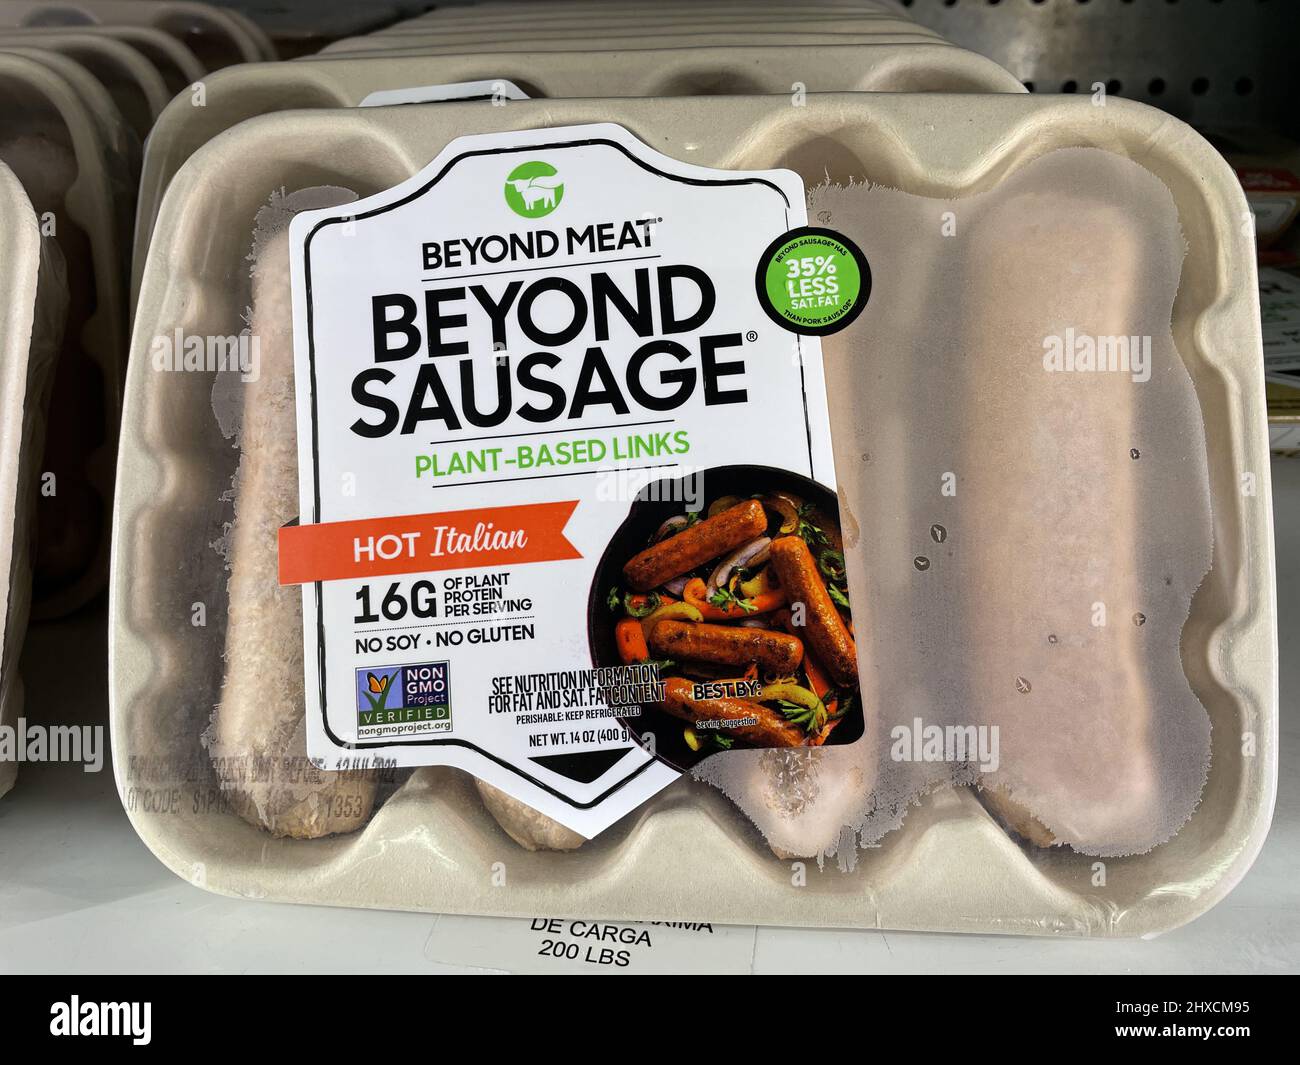 Indianapolis - ca. März 2022: Beyond Meat Beyond Breakfast Sausage Display. Über die Fleischmärkte hinaus gibt es viele pflanzliche und fleischlose Ersatznahrungsmittel Stockfoto